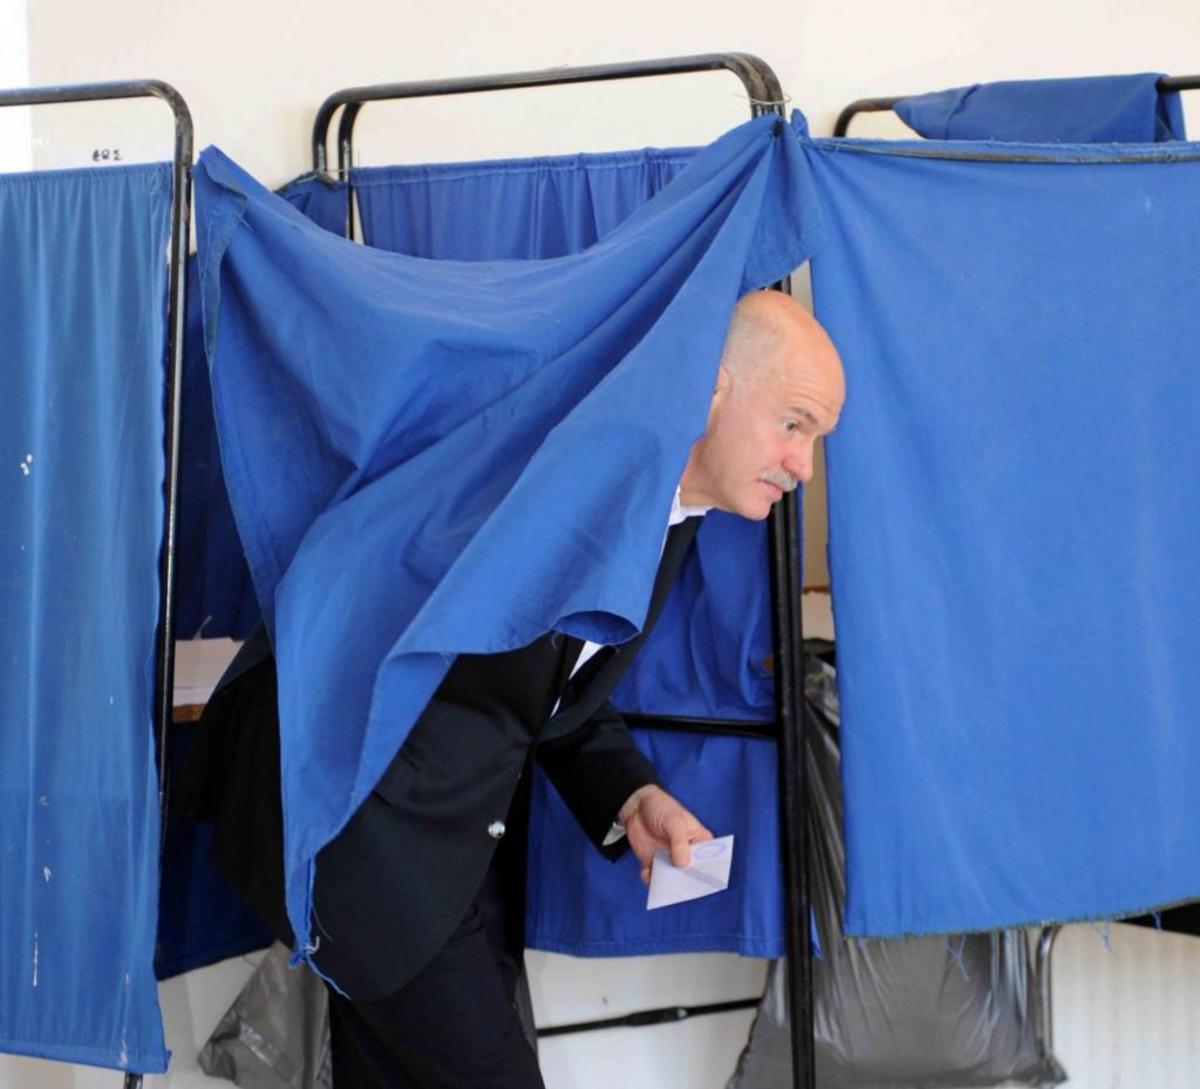 Γ.Παπανδρέου: “Το δημοψήφισμα έπρεπε να είχε γίνει”